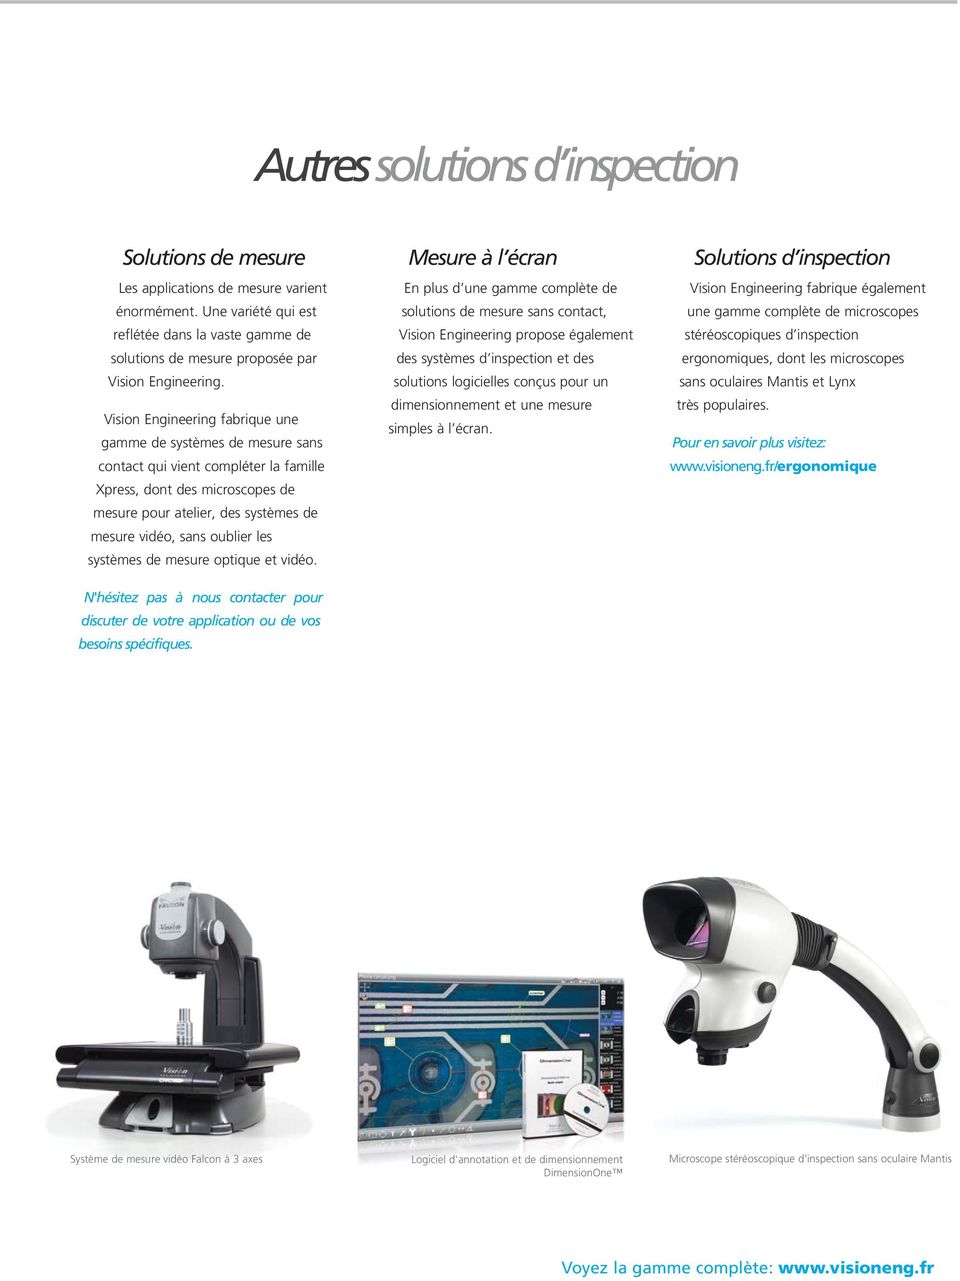 Vision Engineering fabrique une gamme de systèmes de mesure sans contact qui vient compléter la famille Xpress, dont des microscopes de mesure pour atelier, des systèmes de mesure vidéo, sans oublier